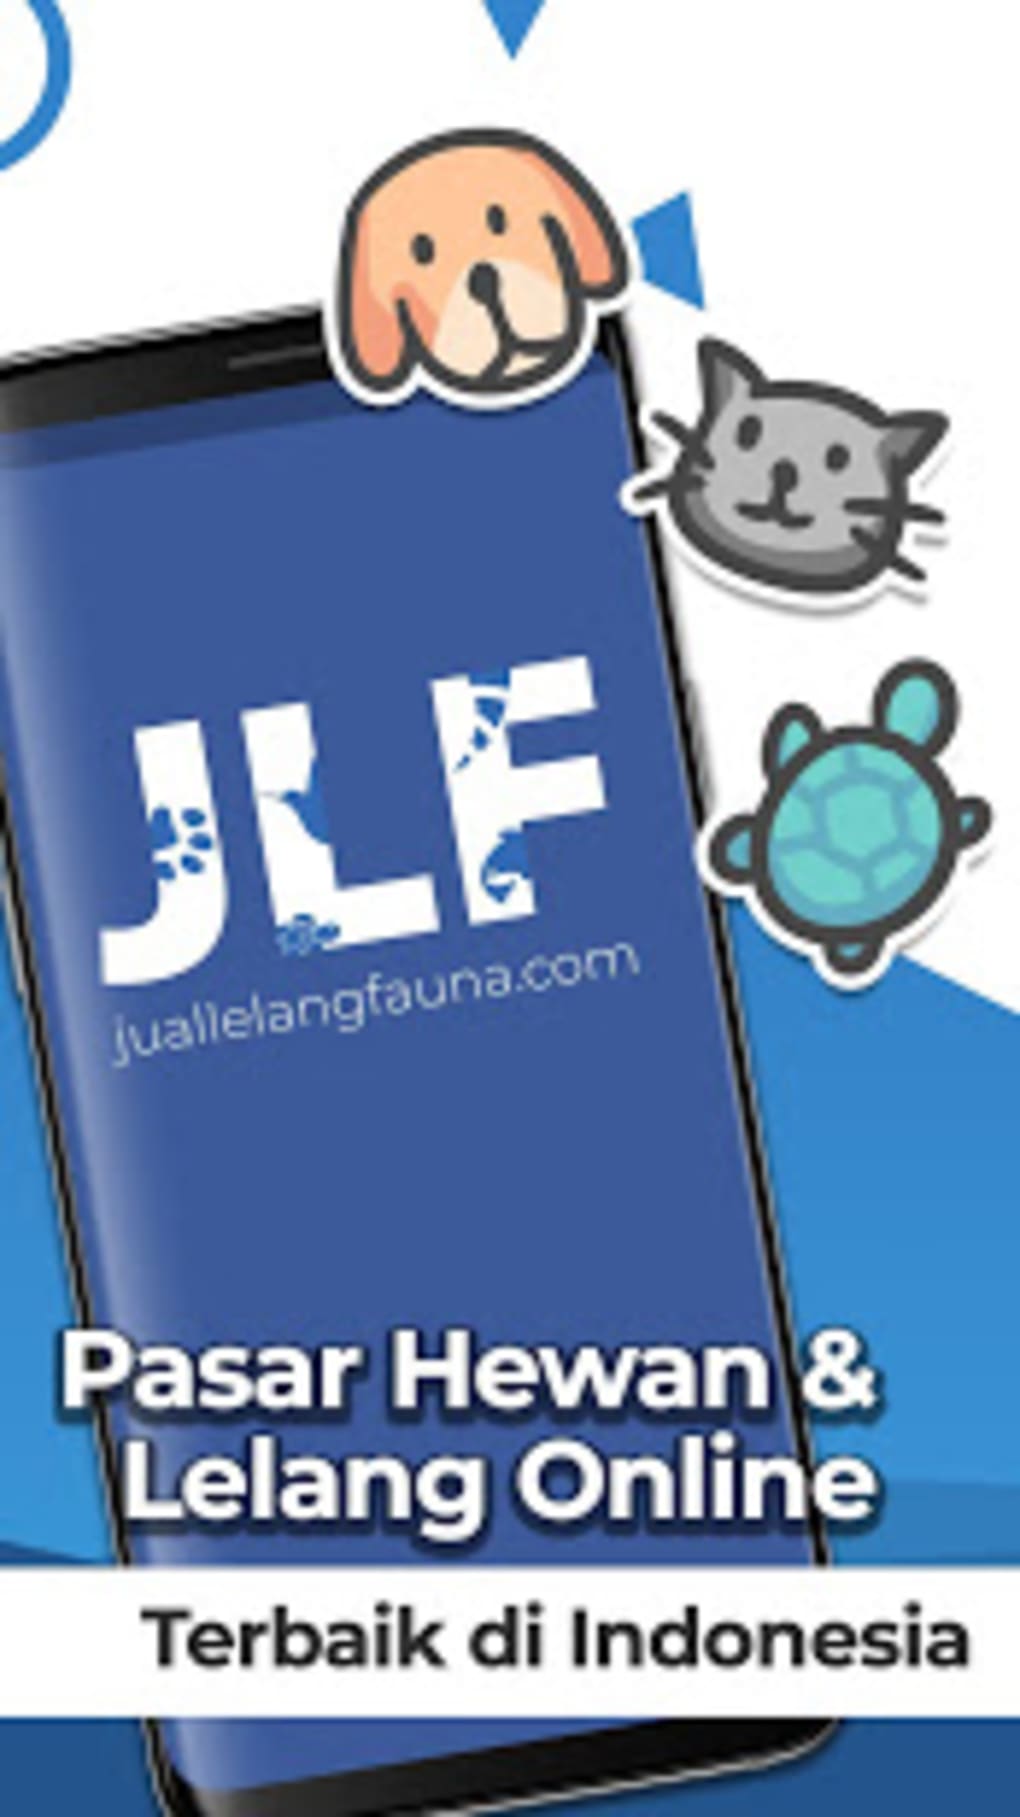 JLF Jual Lelang Fauna Flora untuk Android Unduh